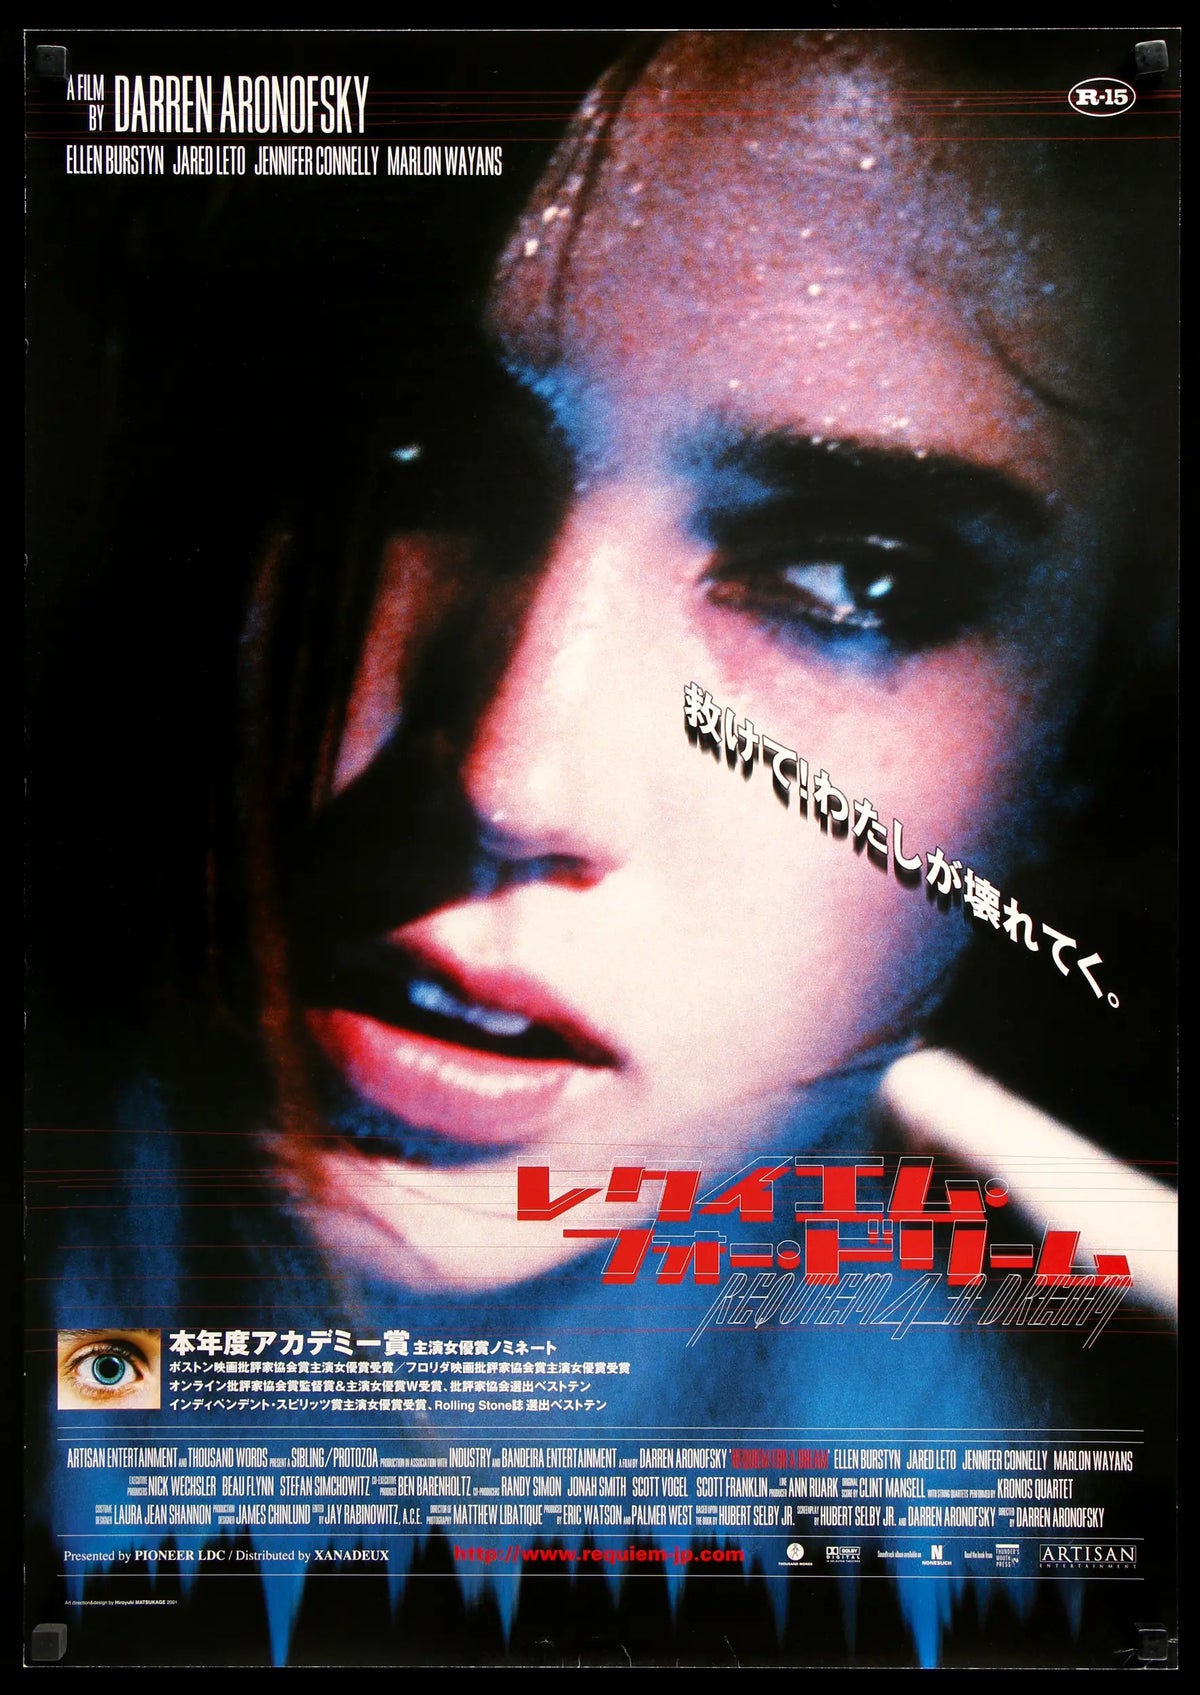 Requiem For a Dream (2000) original movie poster for sale at Original Film Art